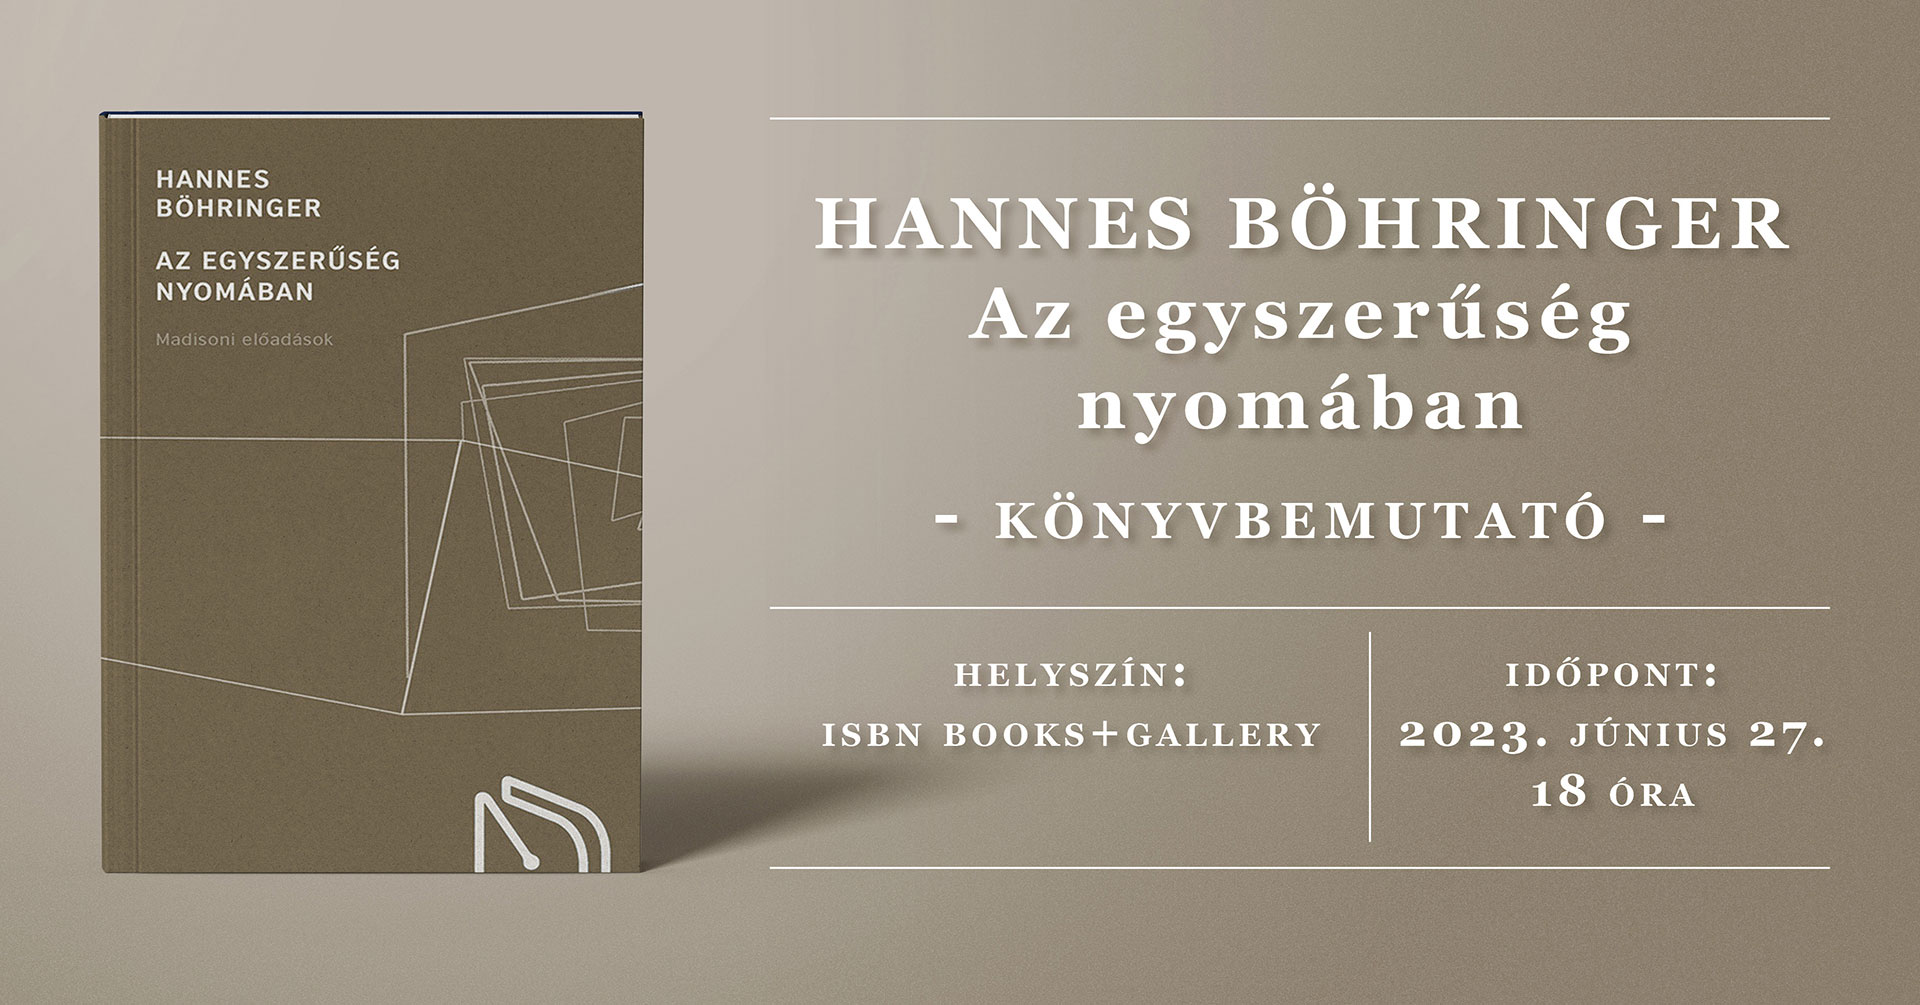 Hannes Böhringer: Az egyszerűség nyomában könyvbemutató